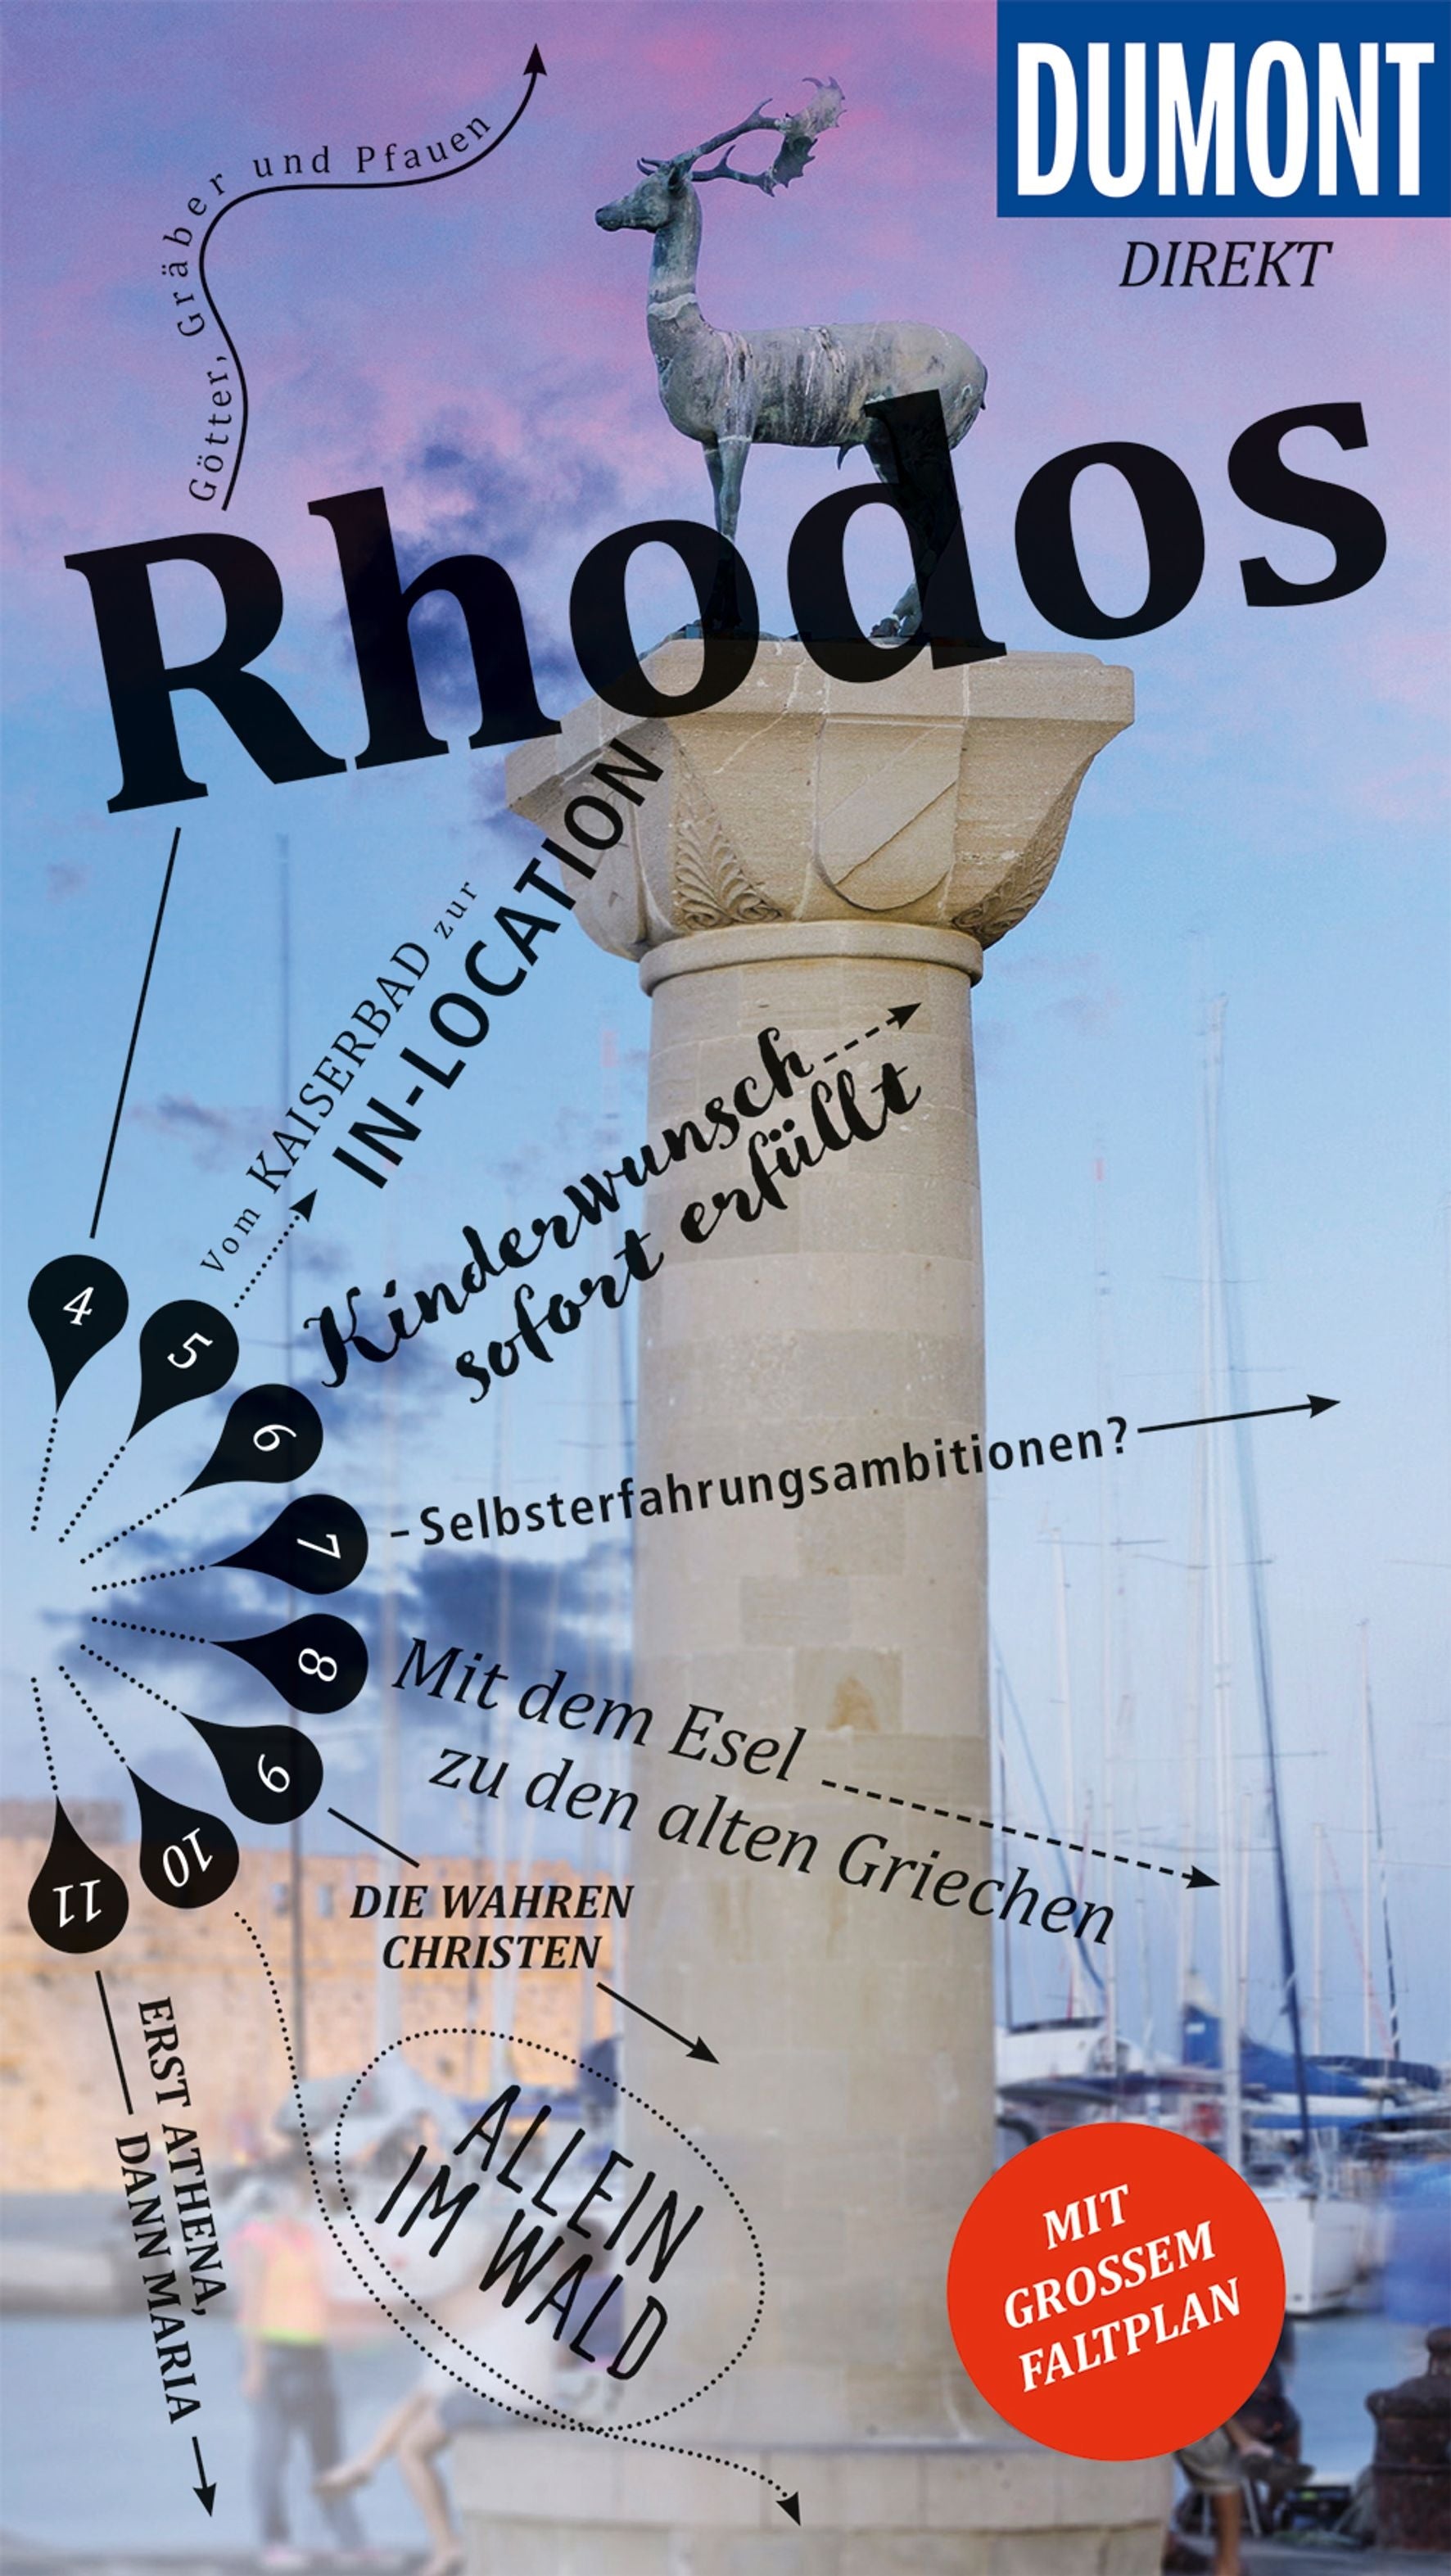 Rhodos - Dumont direkt Reiseführer